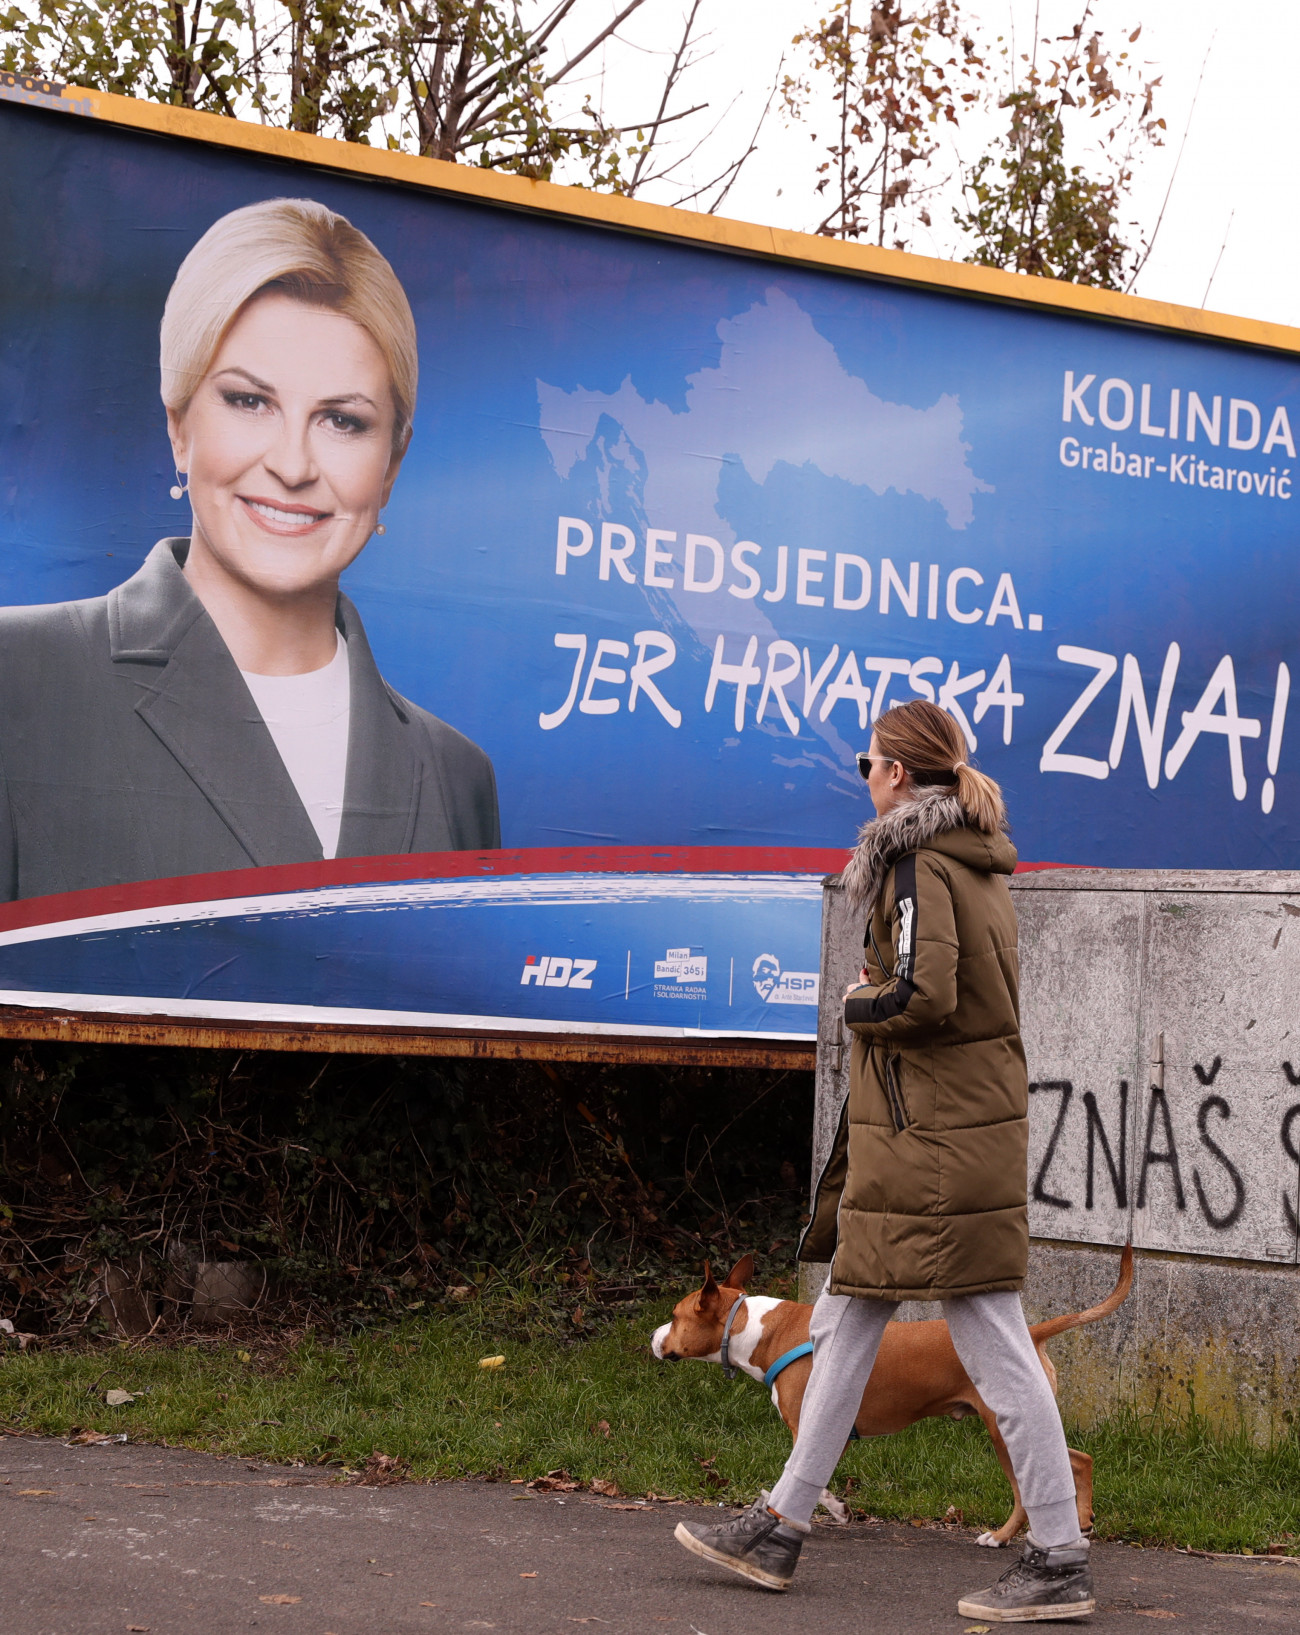 Kolinda Grabar-Kitarovic jelenlegi államfőnek, a kormányzó jobboldali Horvát Demokratikus Közösség (HDZ) jelöltjének választási plakátja Zágrábban 2019. december 18-án, négy nappal a horvát elnökválasztás előtt.
MTI/EPA/Antonio Bat